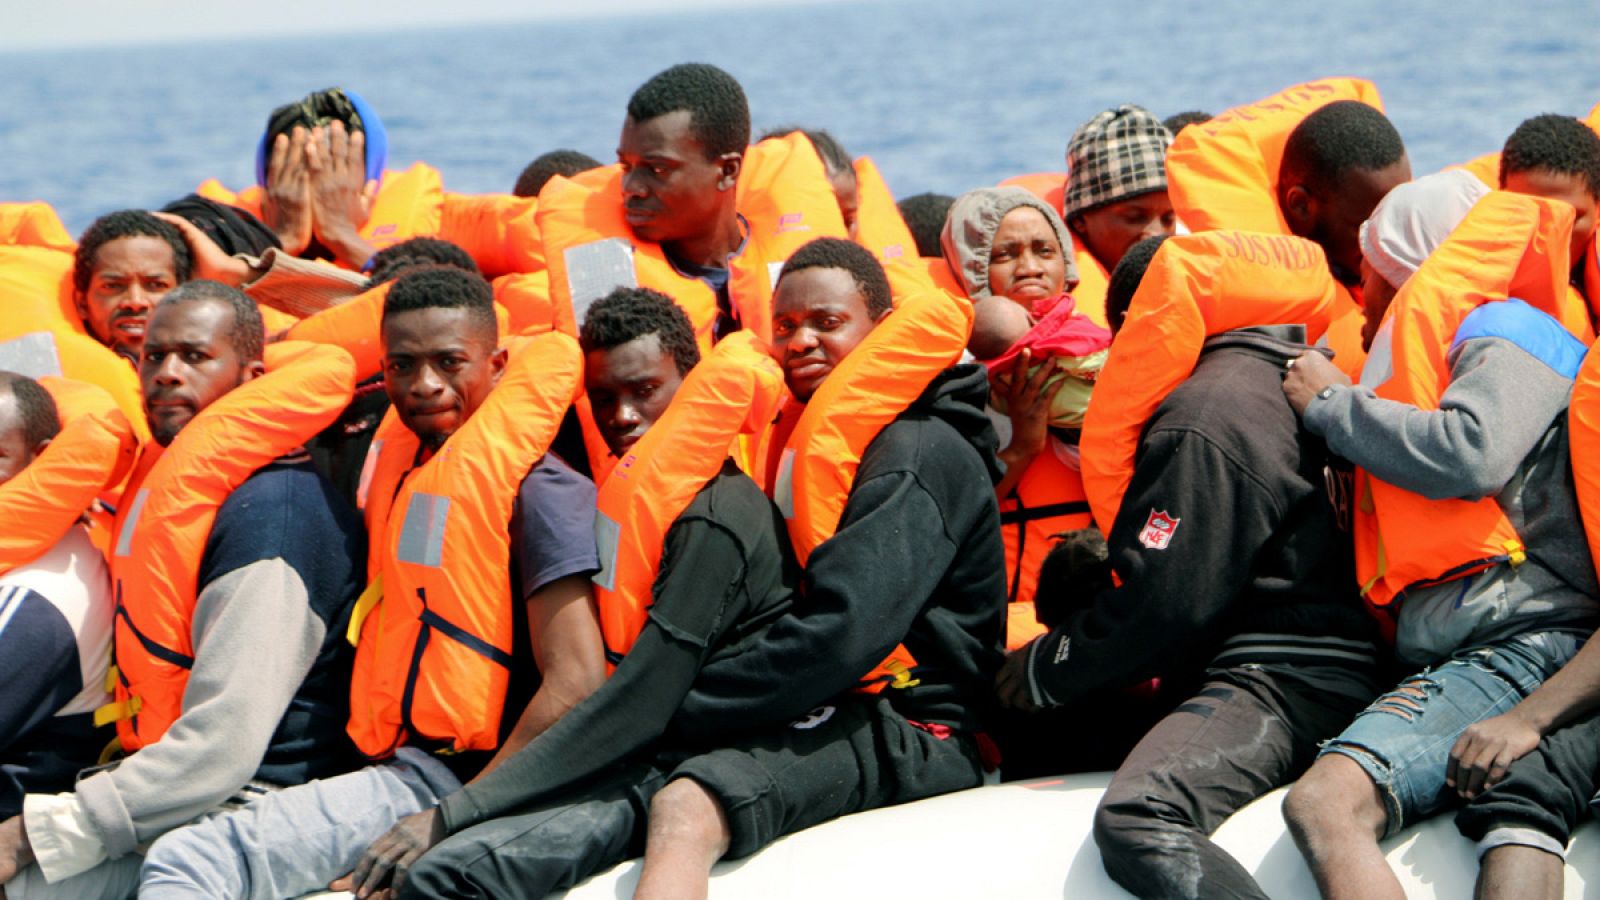 Culmina el rescate de más de 250 personas que navegaban a la deriva en dos botes de goma frente a las costas de Libia